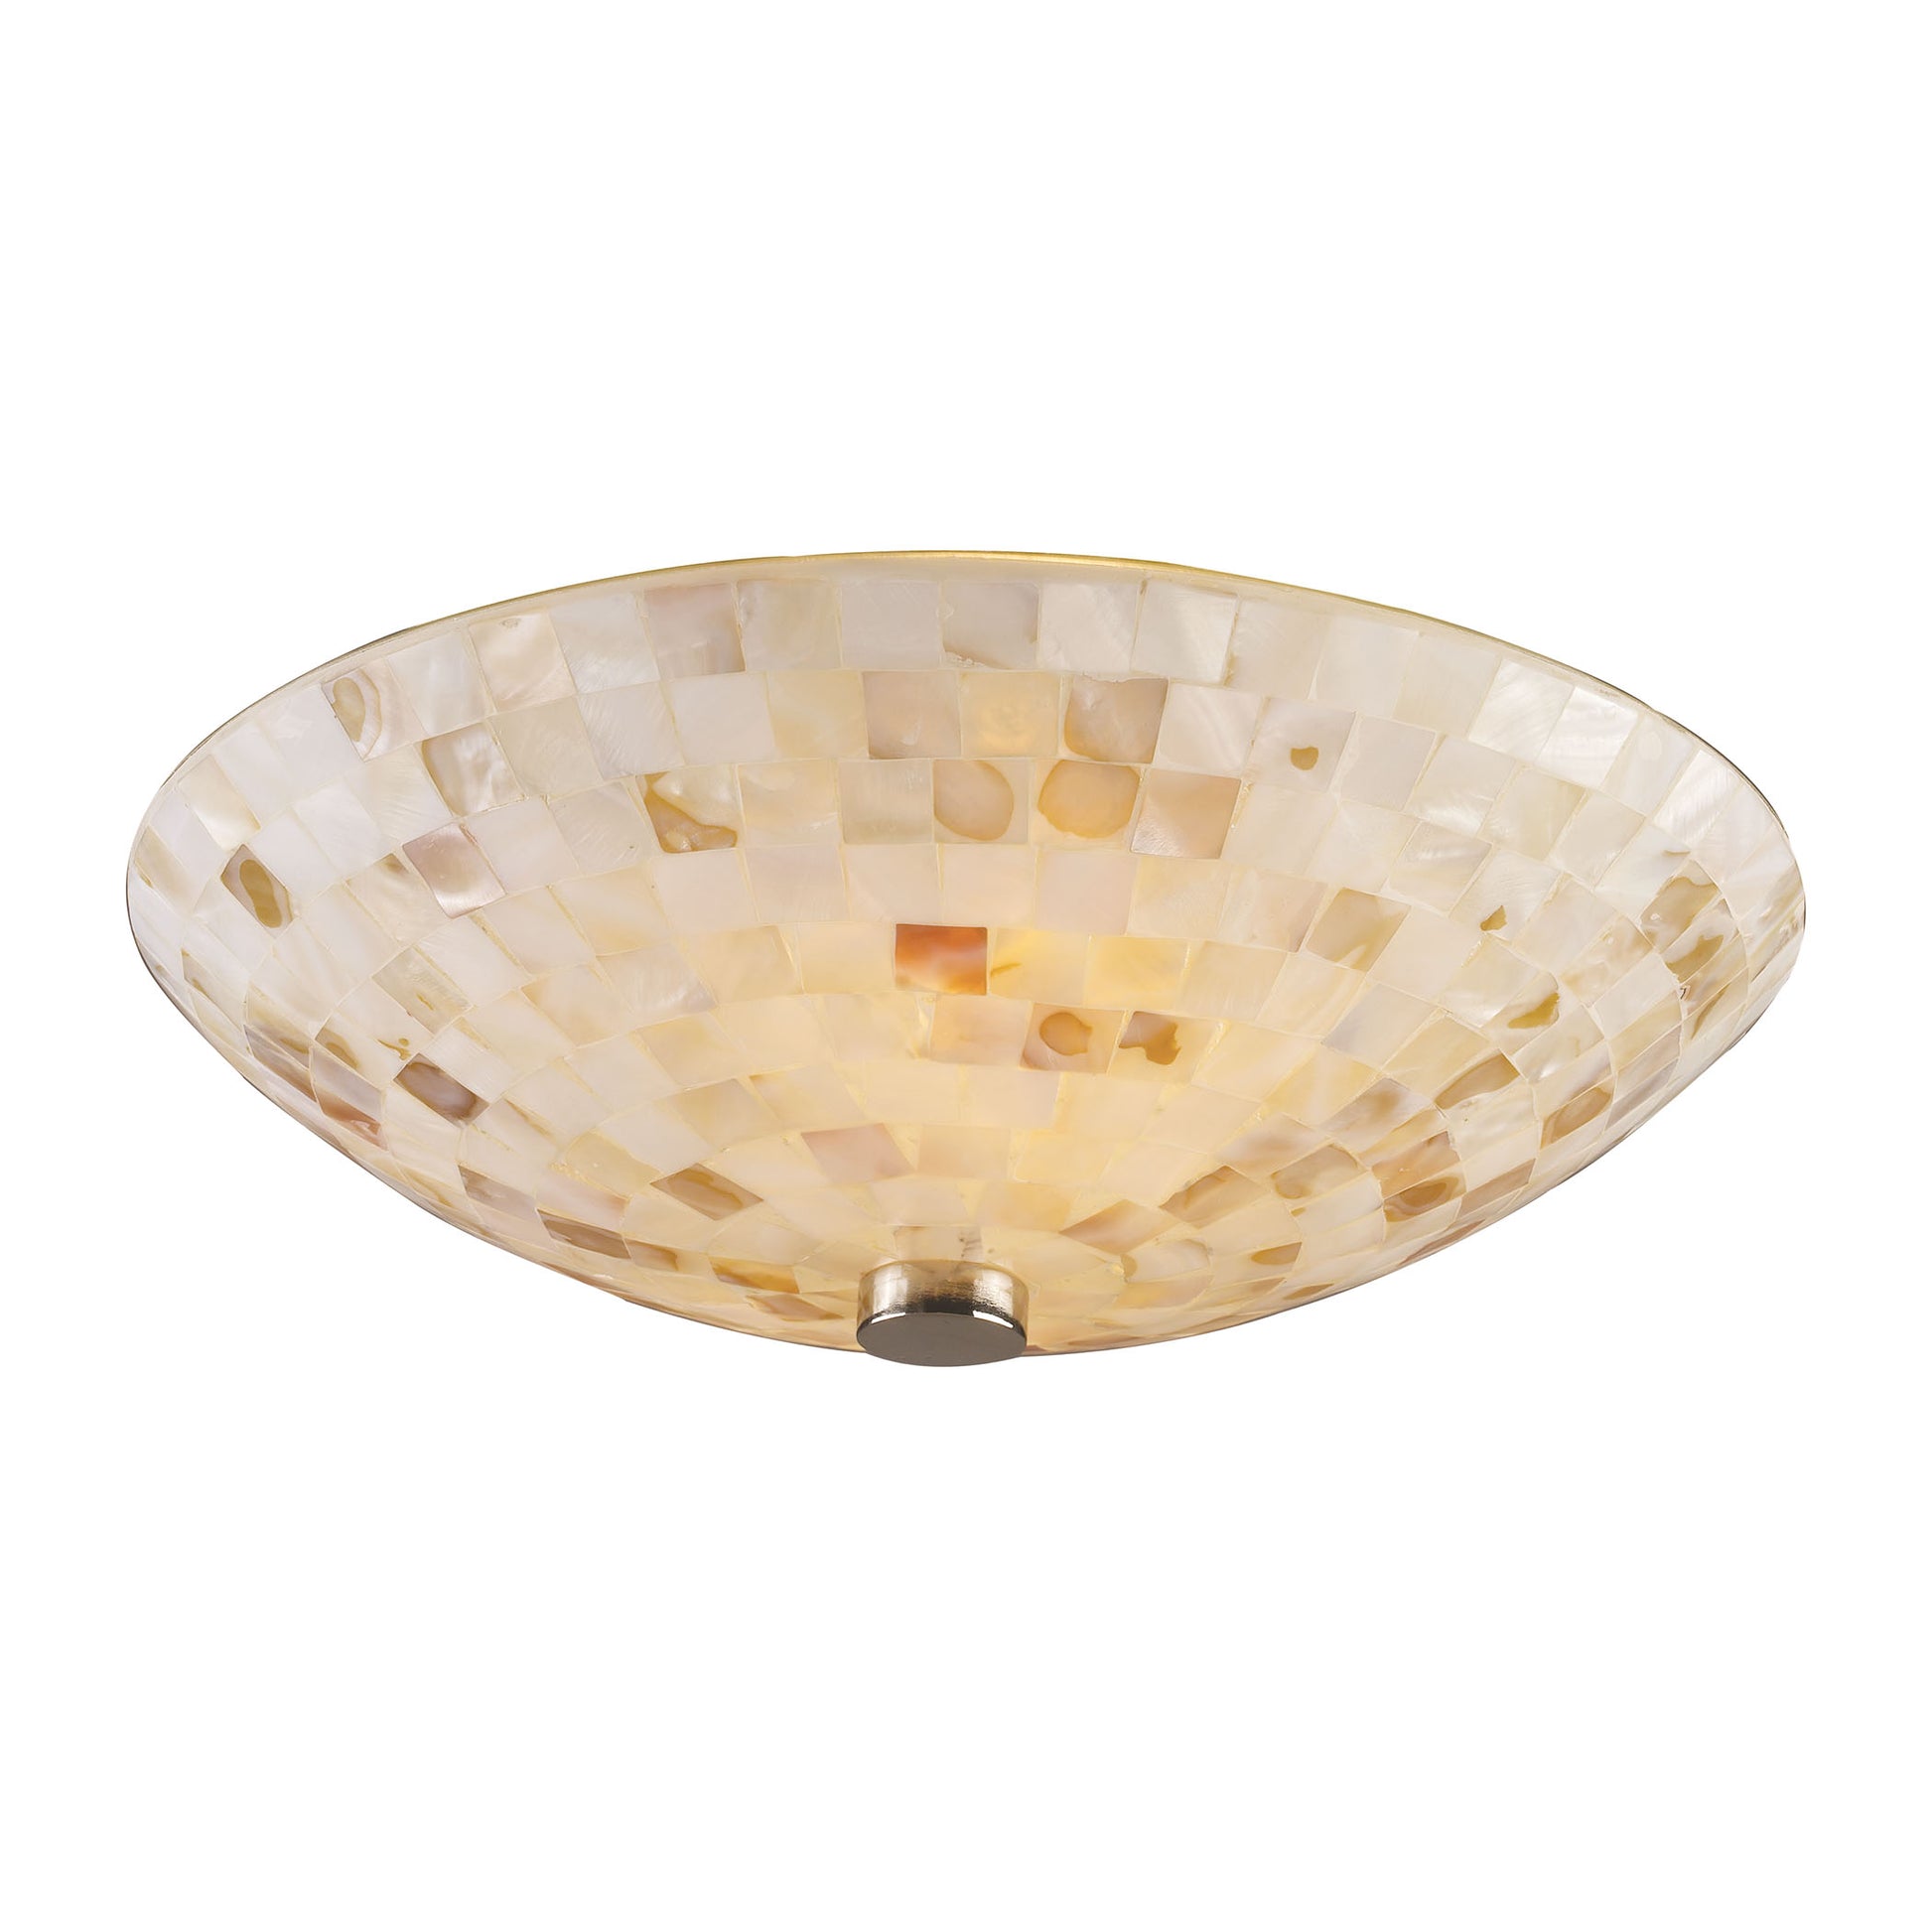 Capri 2-Light Semi Flush in Satin Nickel with Capiz Shell Glass ELK Lighting | Ceiling Lamps | Modishstore